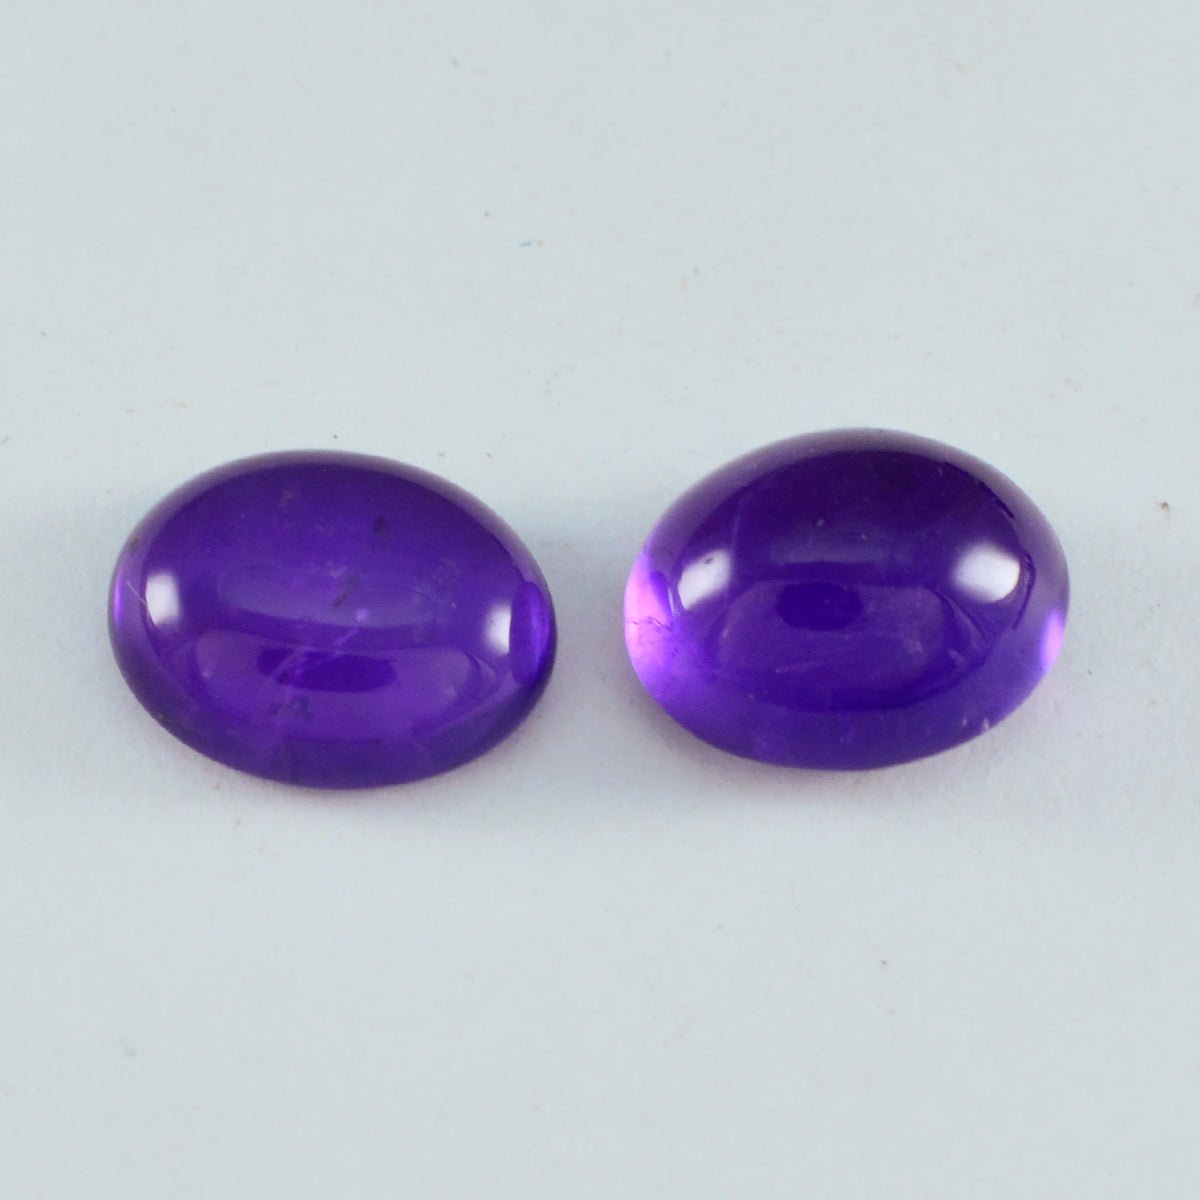 Riyogems 1PC Purple Amethyst Cabochon 9x11 mm Oval Shape handsome Quality Loose Gemstone